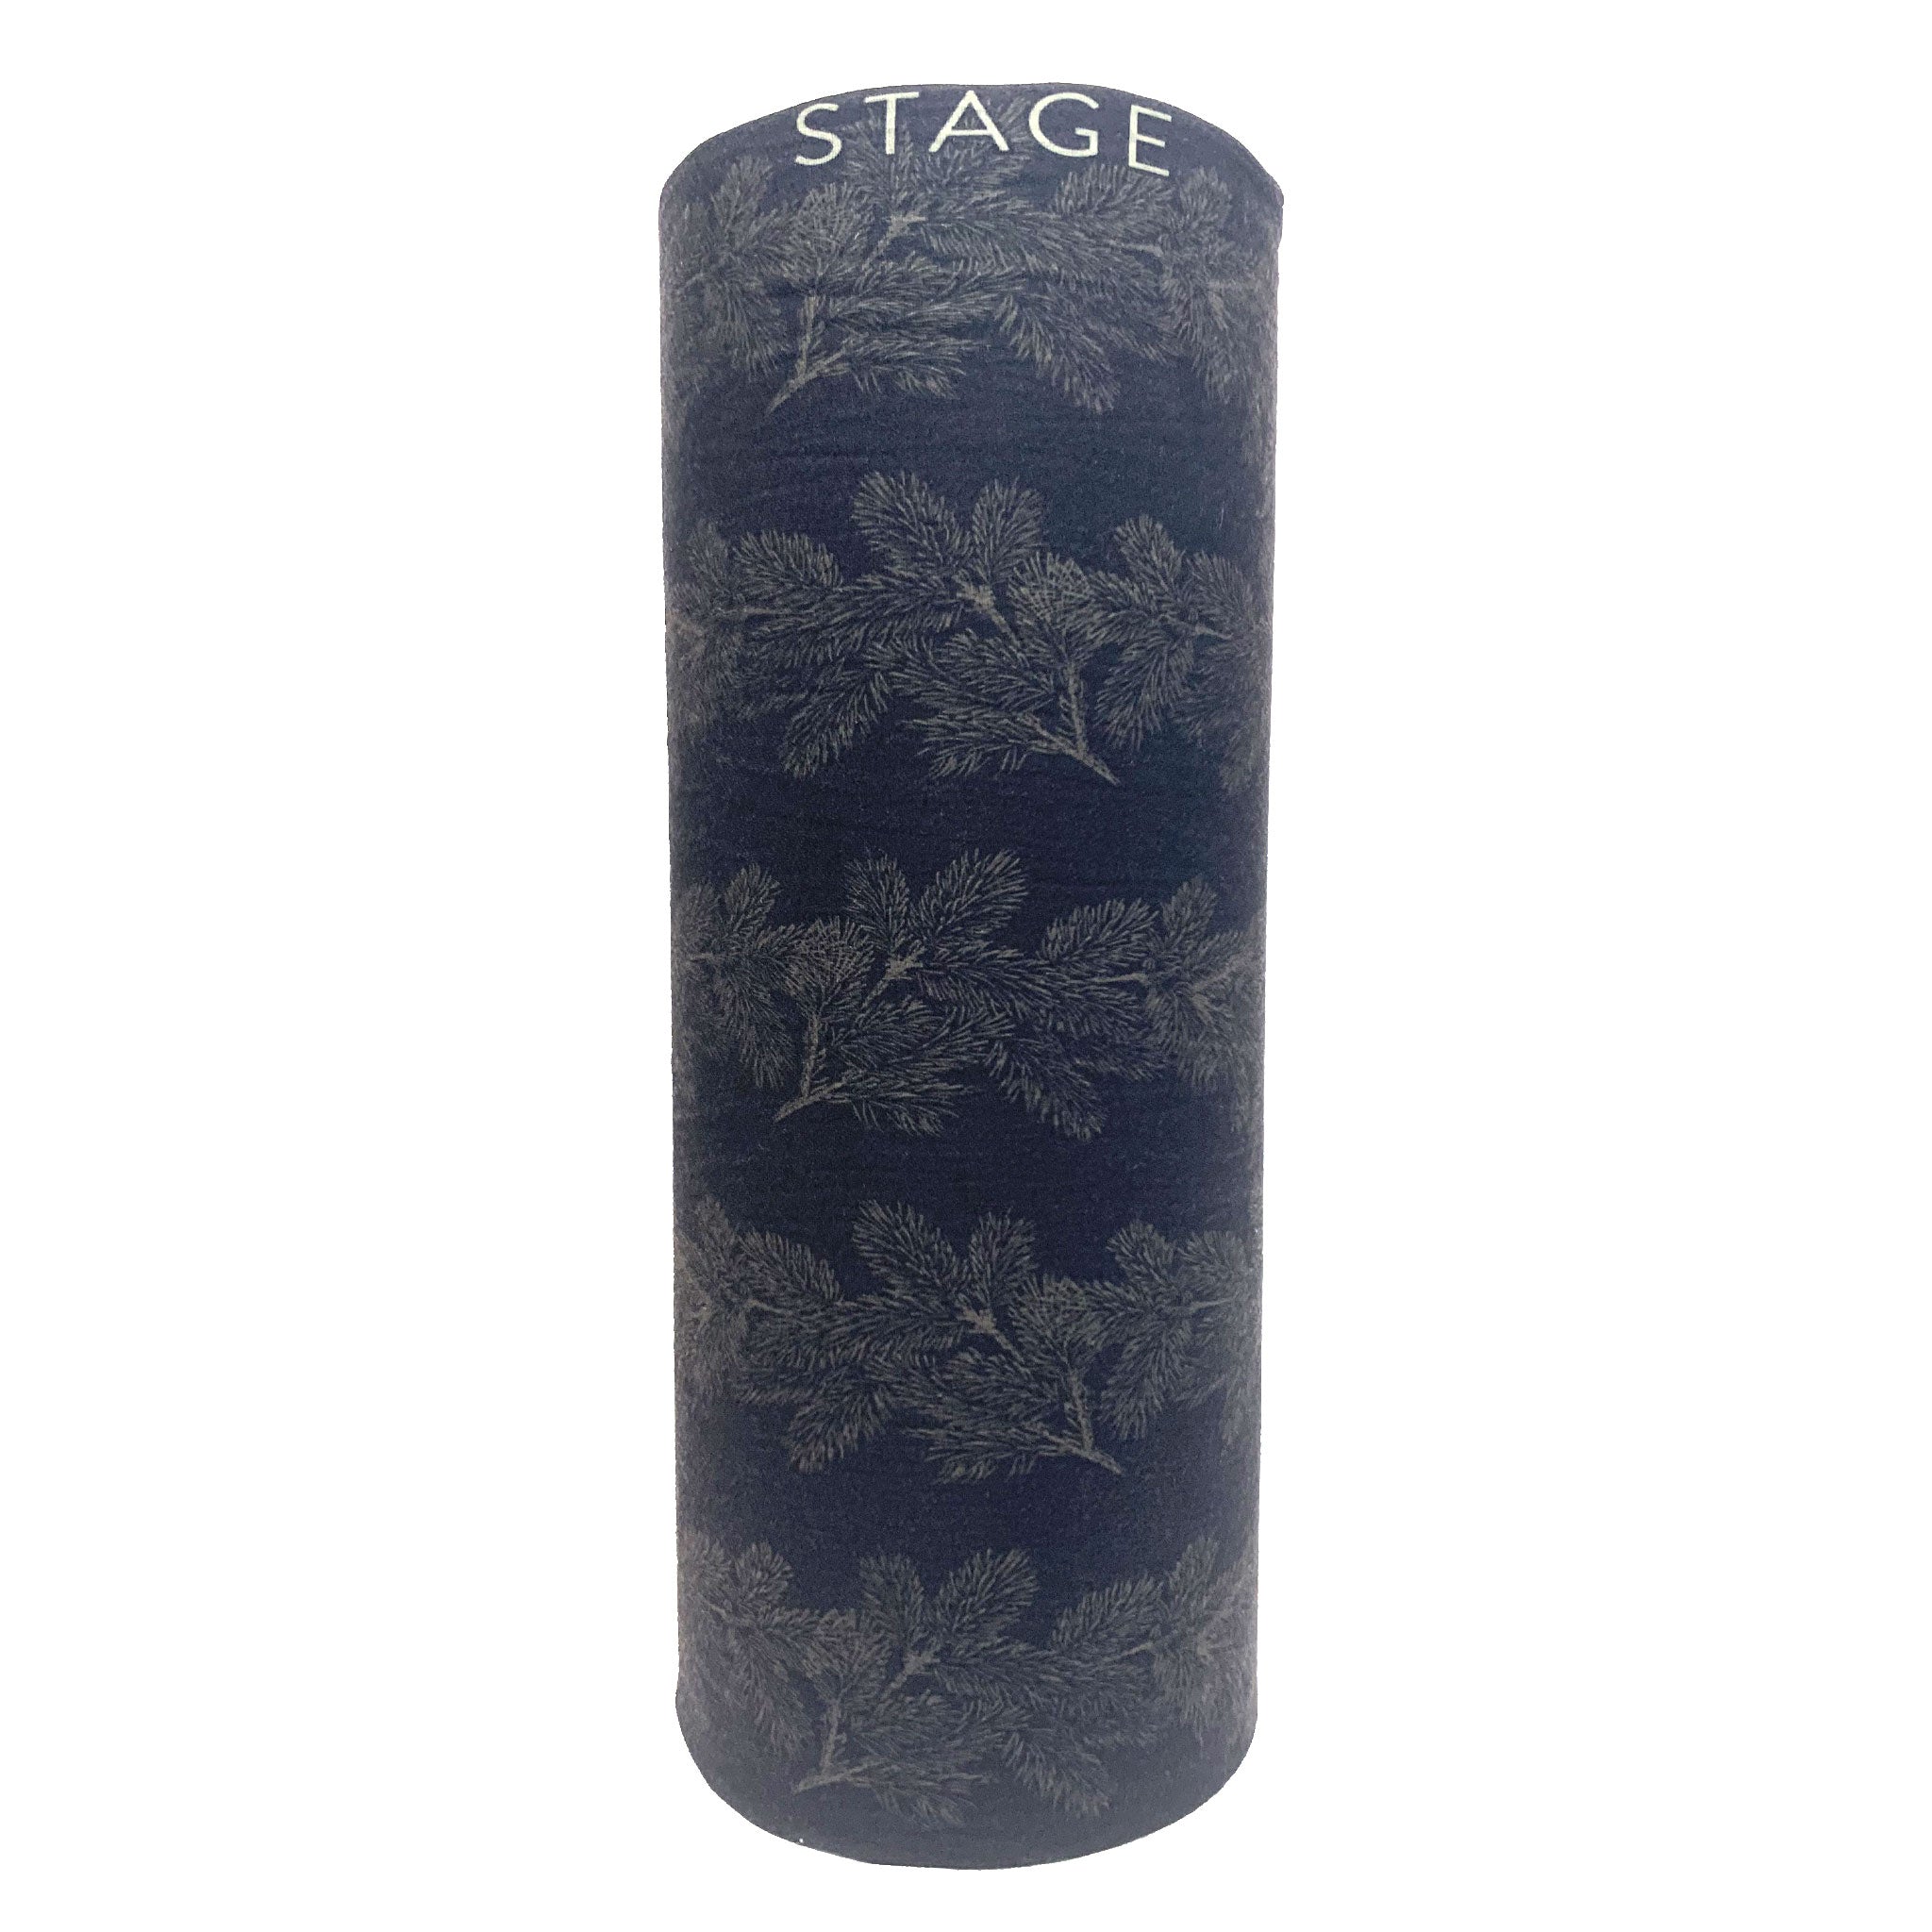 STAGE Jr Face Tube - Floral Black - Fleece - Jr Large (7-14)